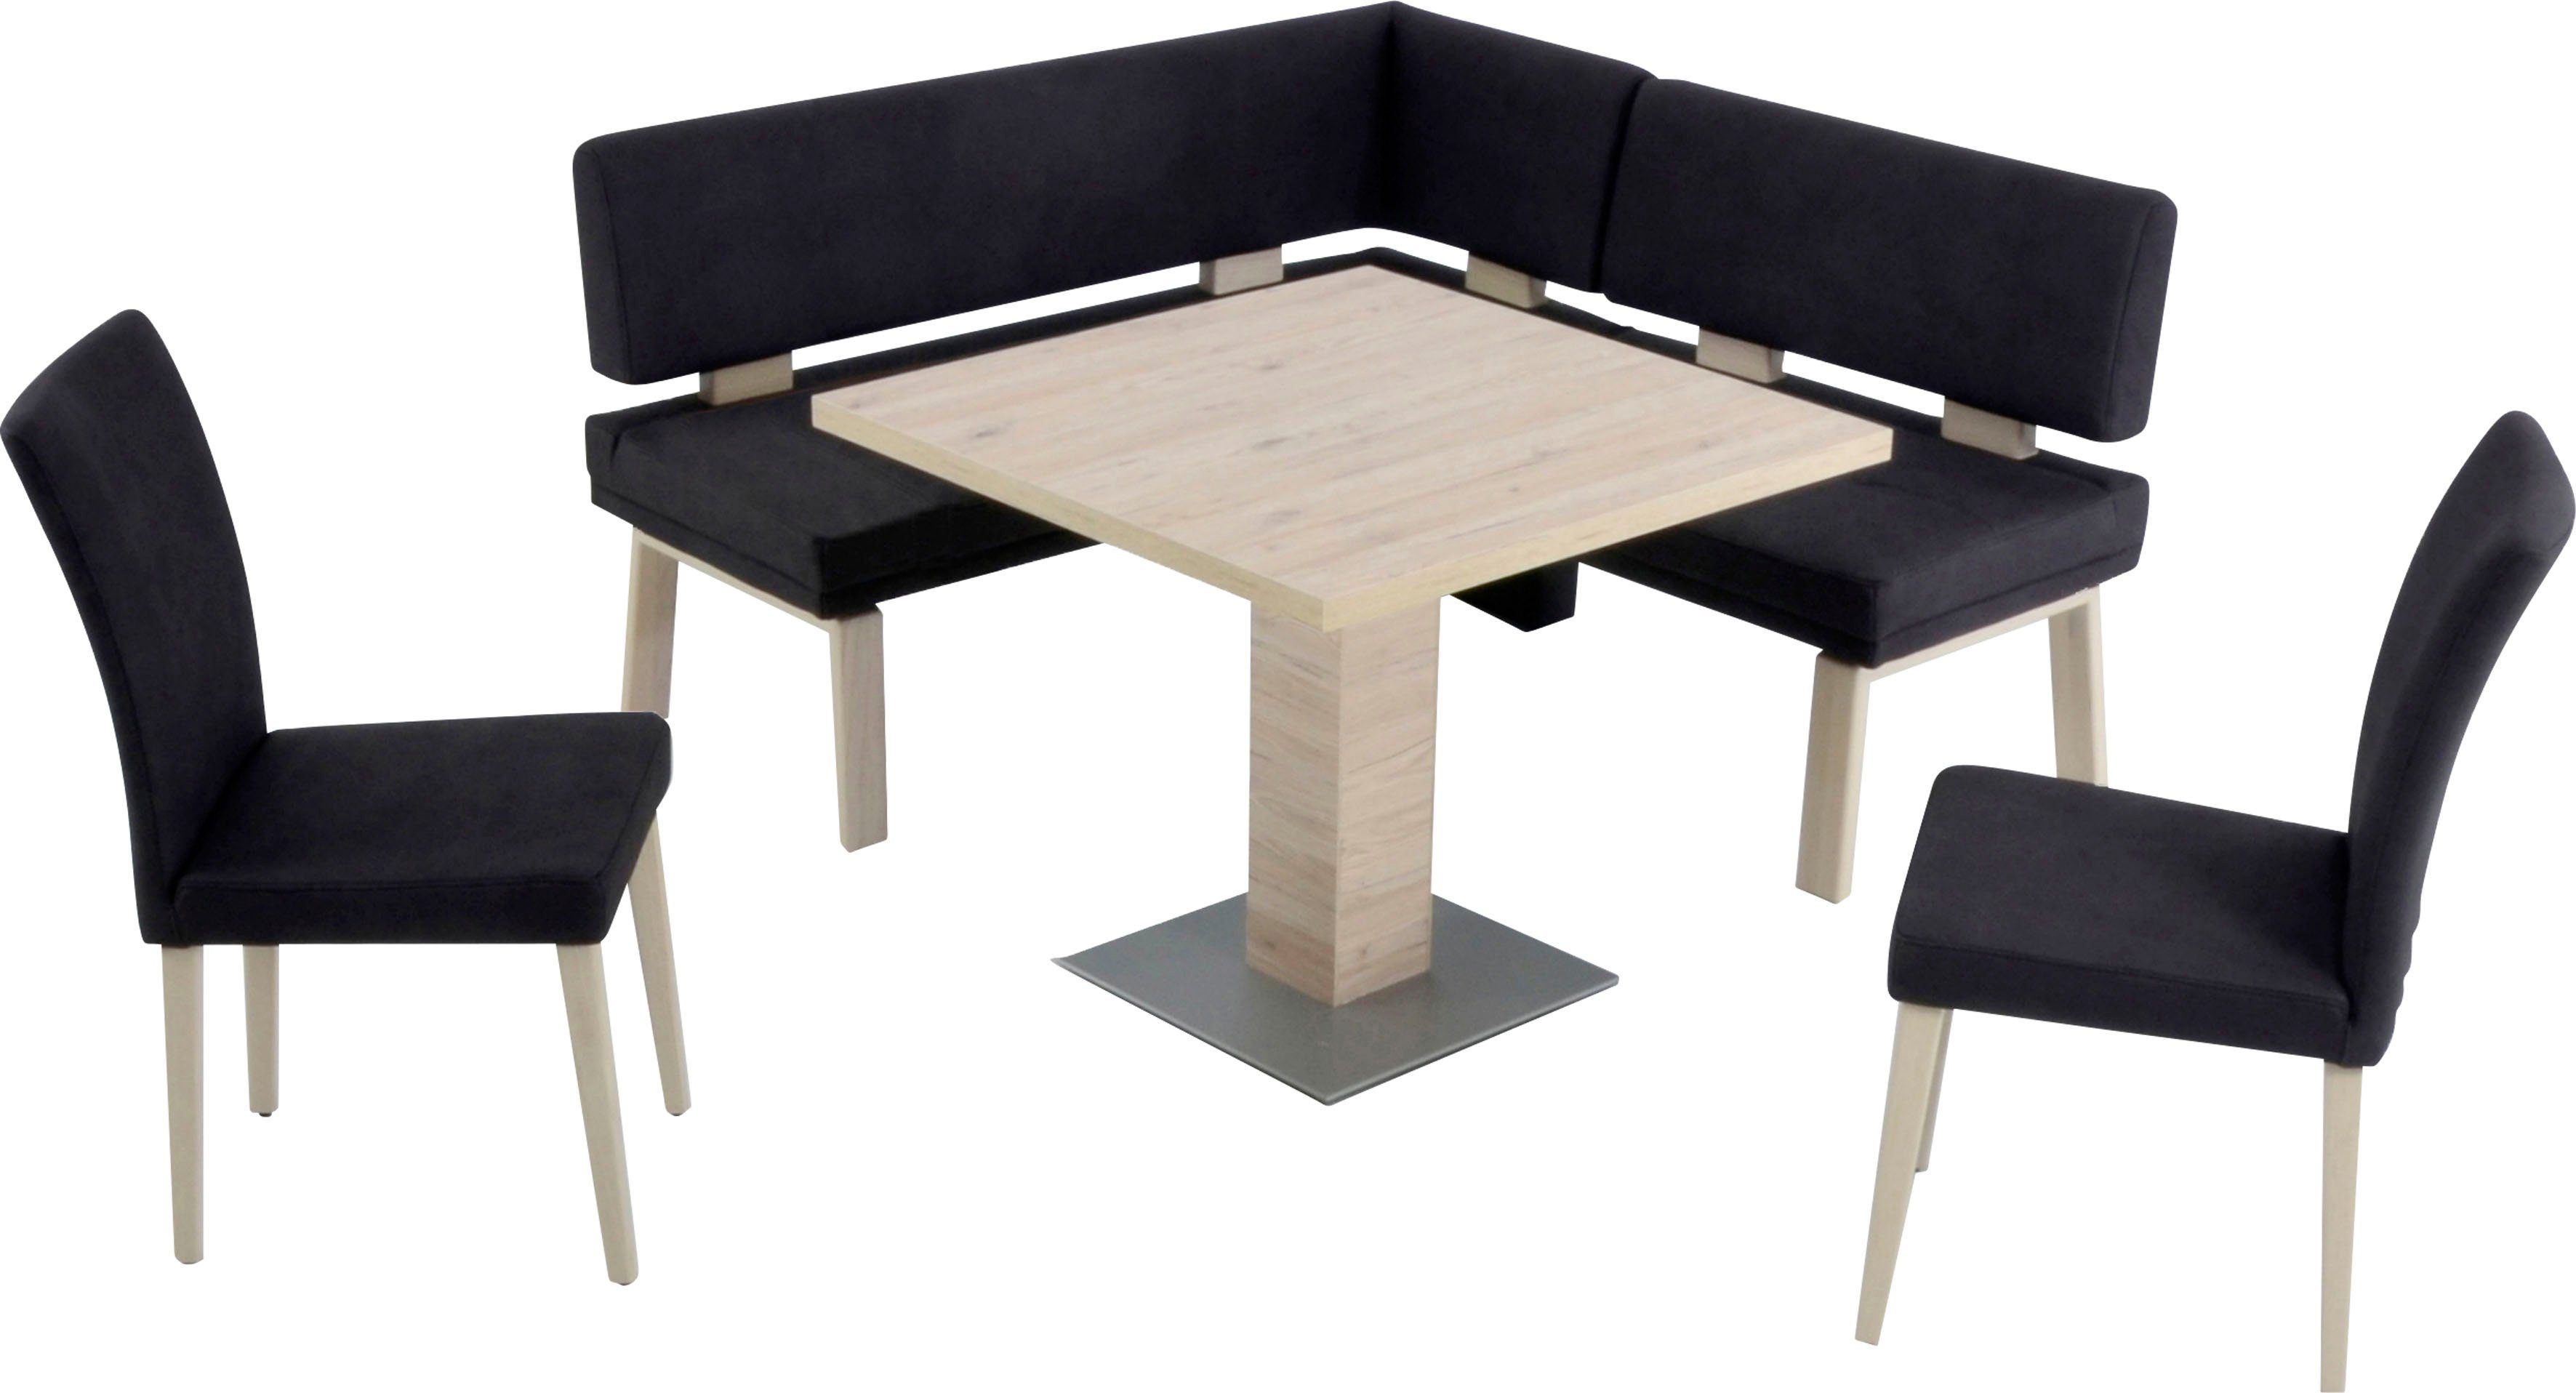 I, 90x90cm, 157cm, Eiche gleichschenklig Wohnen Eckbankgruppe Tisch K+W und zwei darkbrown Santos 4-Fußholzstühle & Komfort